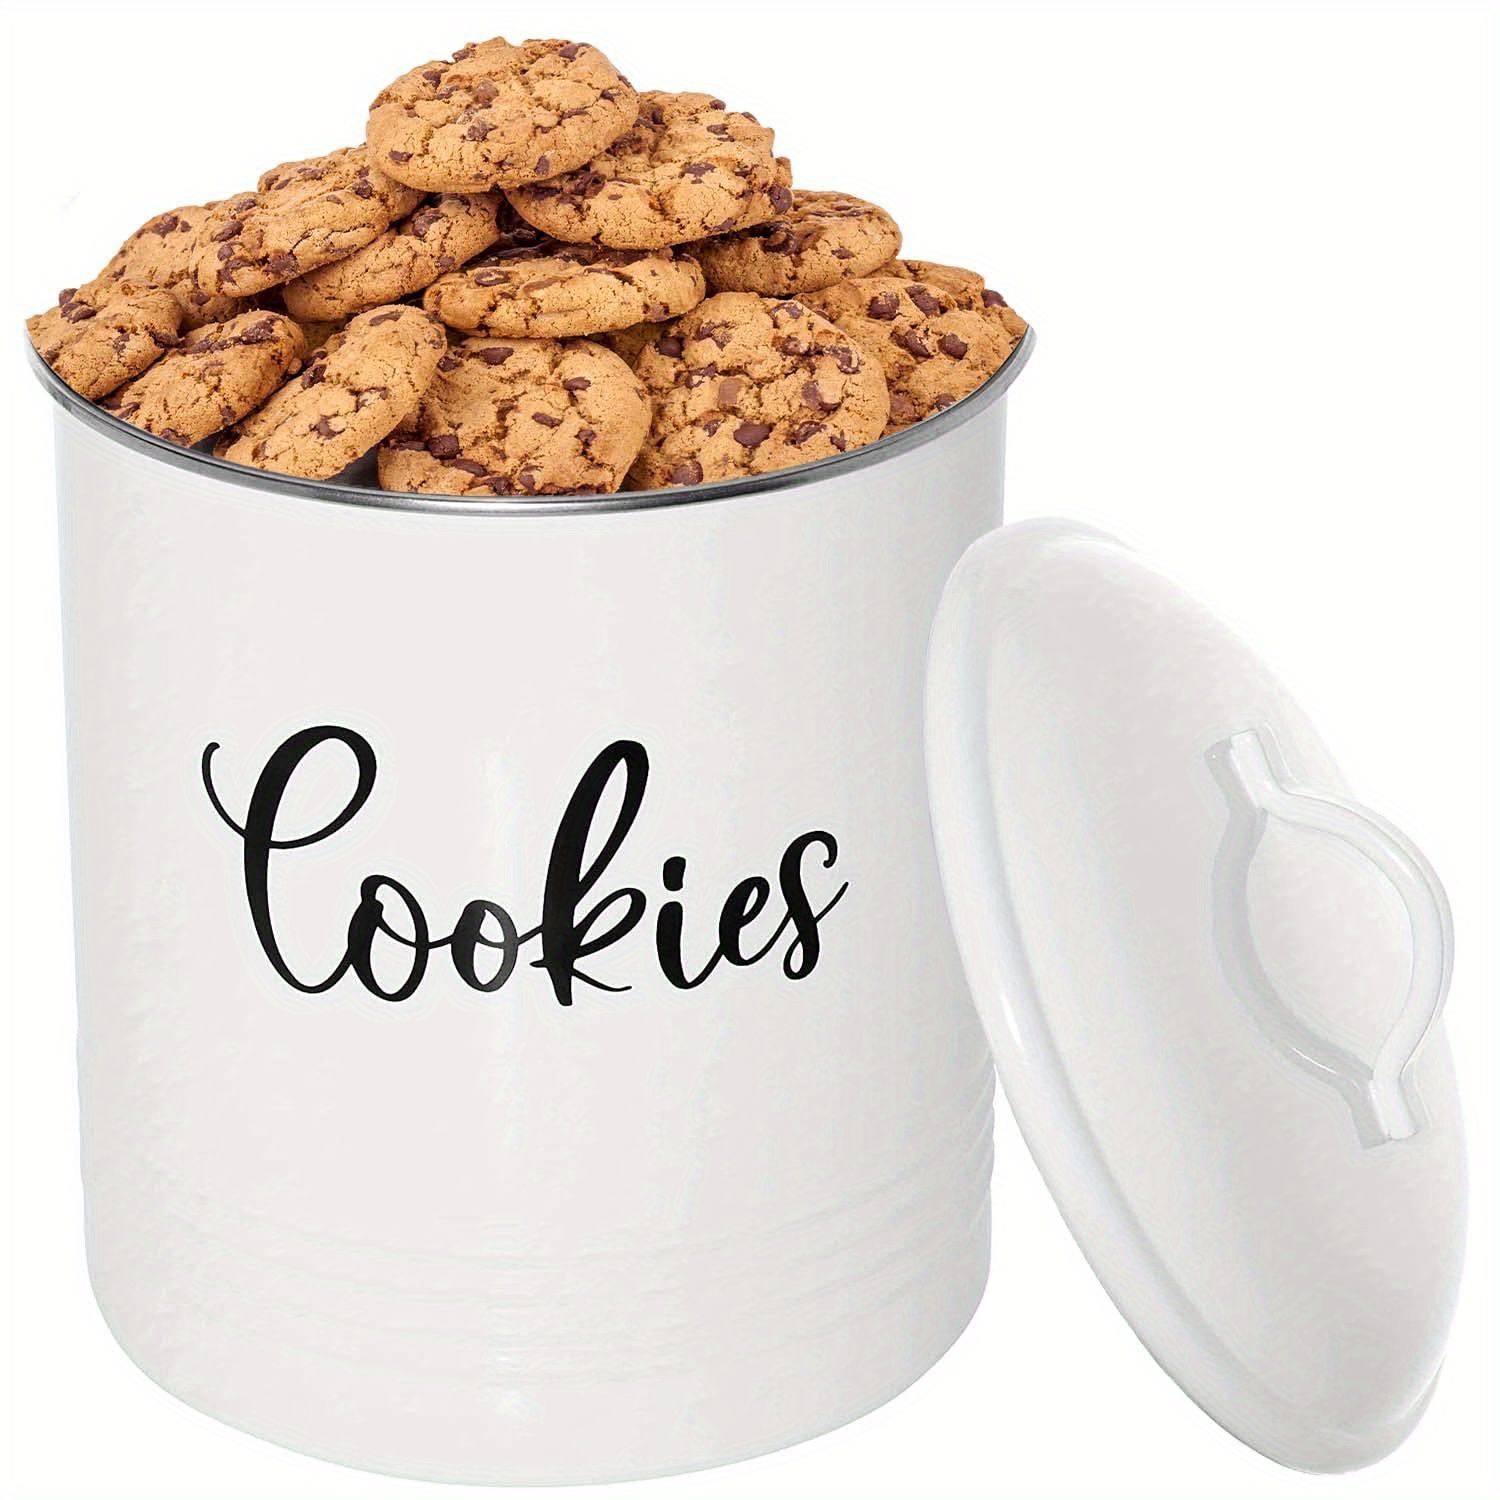 Personalized Farmhouse Ceramic Cookie Jar, Personalized Cookie Jar,  Personalized Treat Jar, Family Kitchen Decor, Ceramic Jar -gfyU1333215X